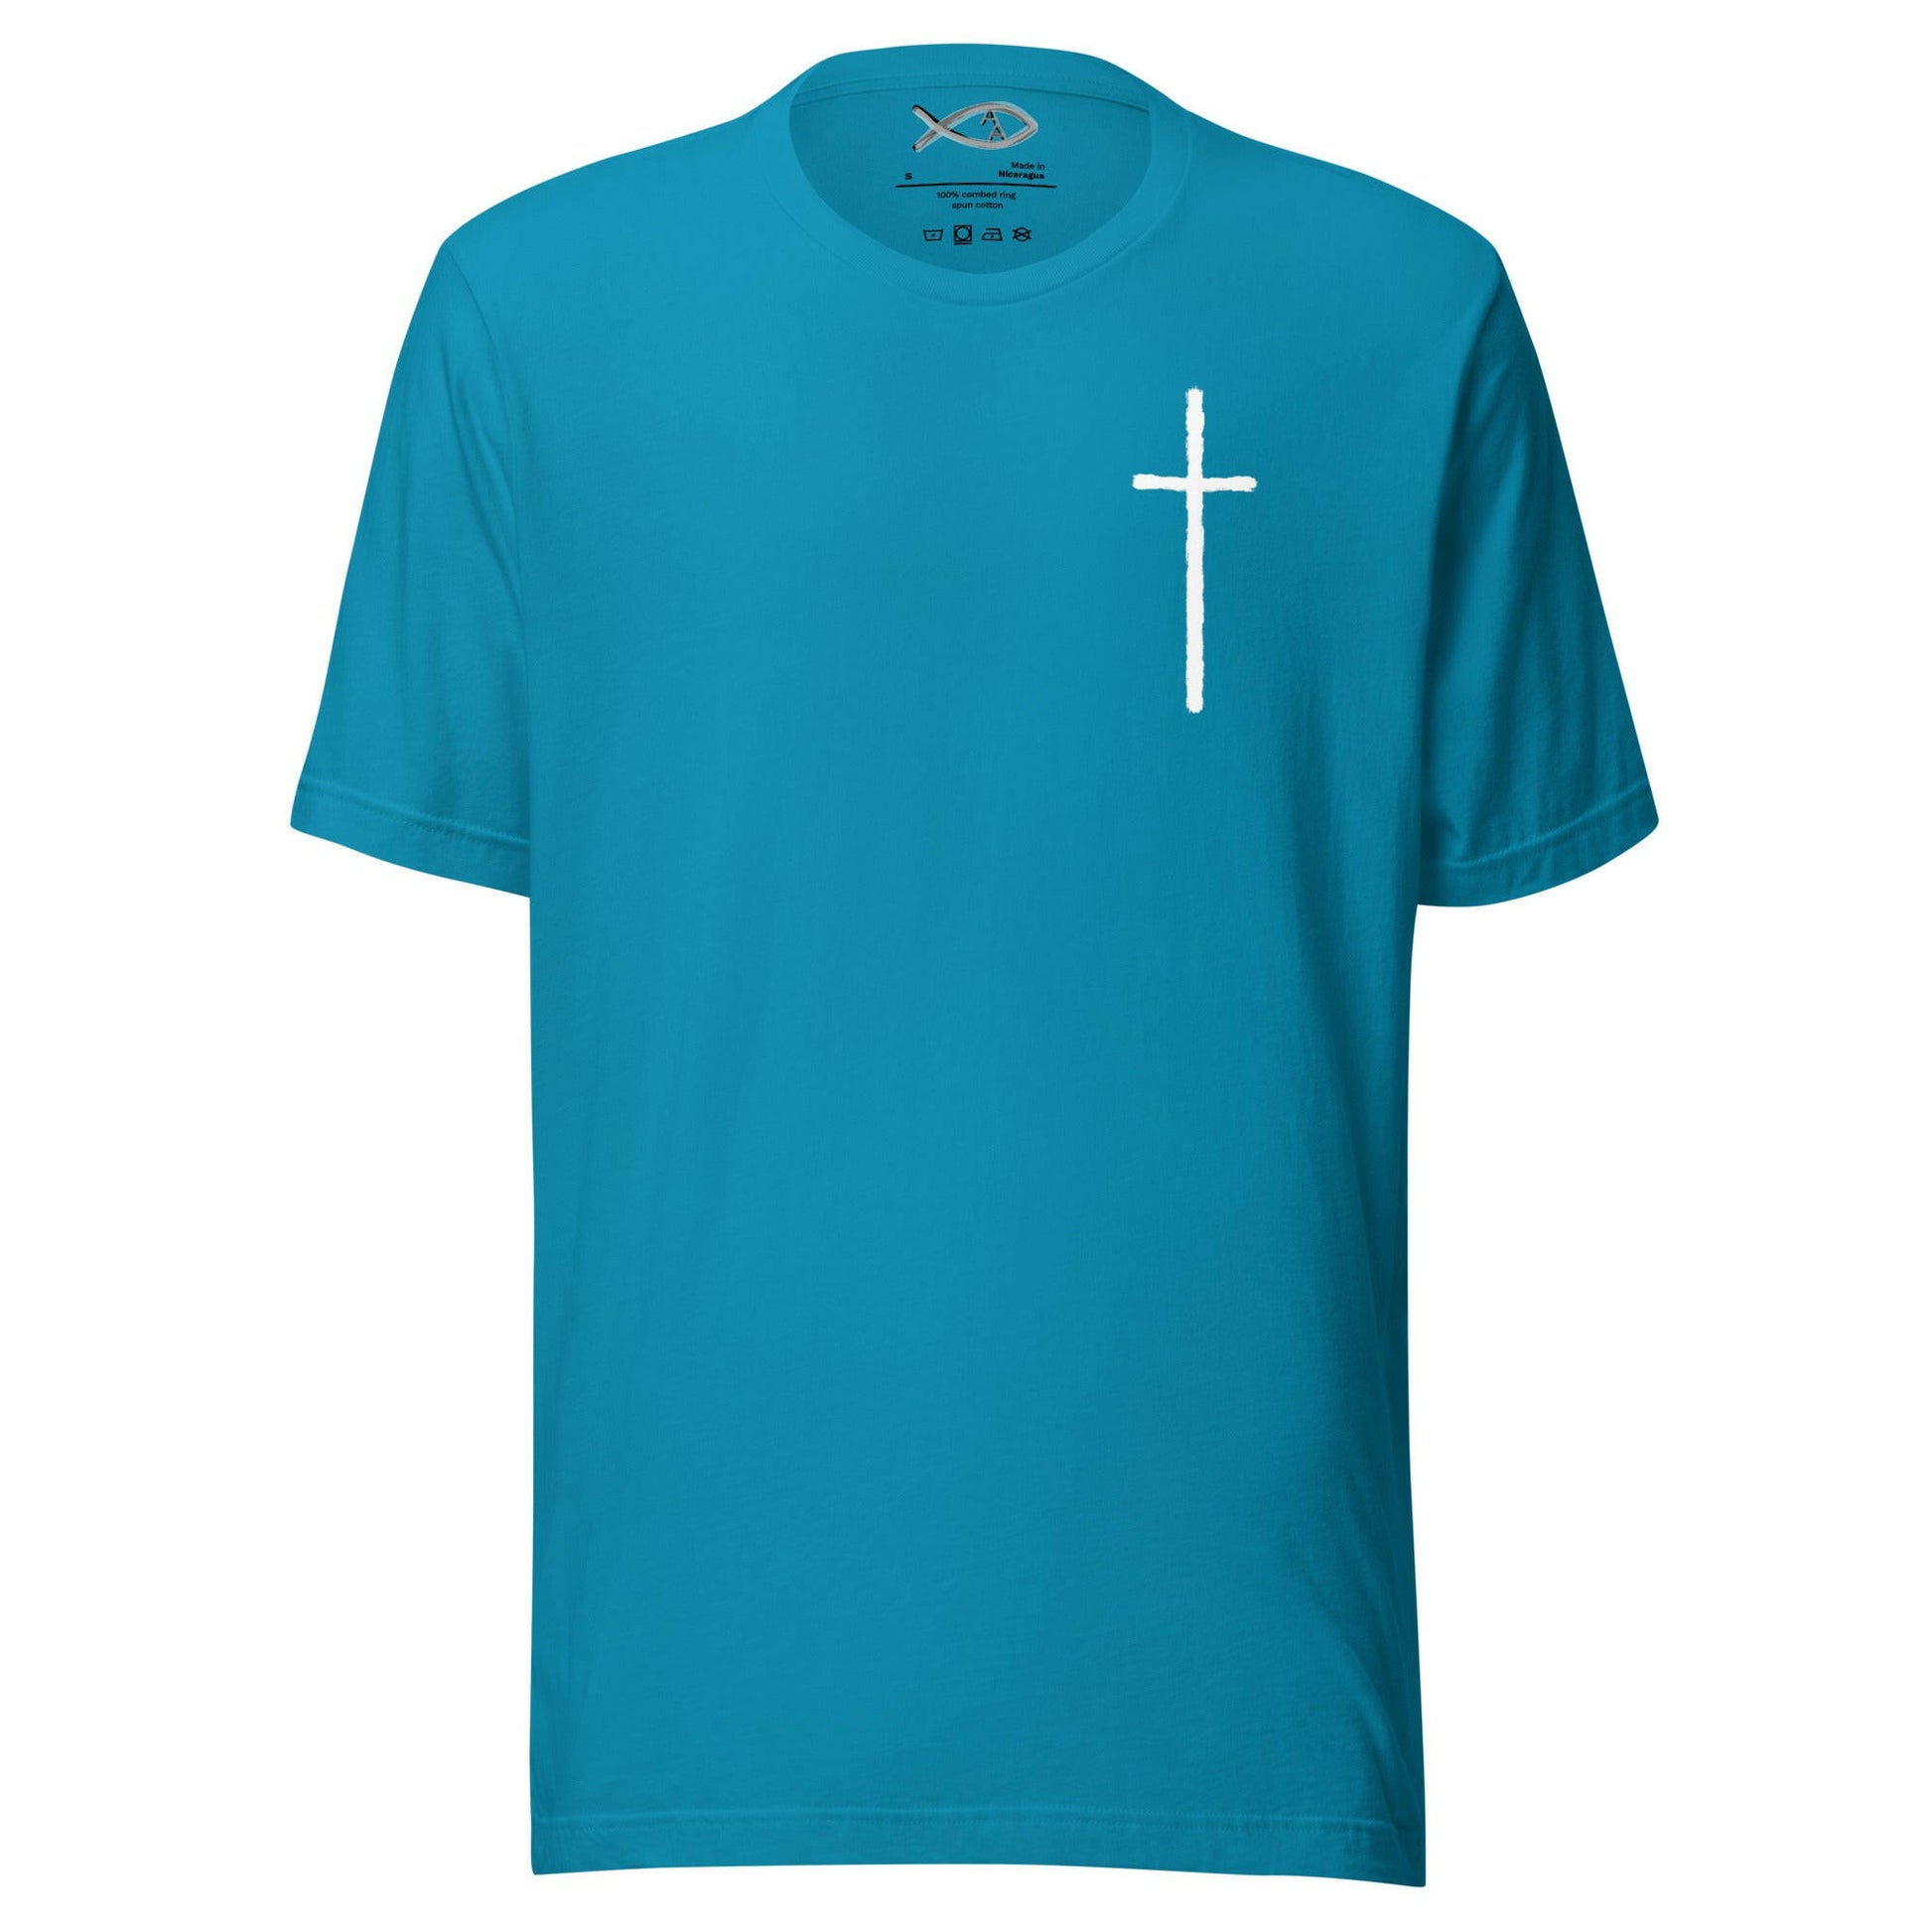 Ephesians 4:5-6 - Unisex T-Shirt (Faith) - Almighty Apparel 